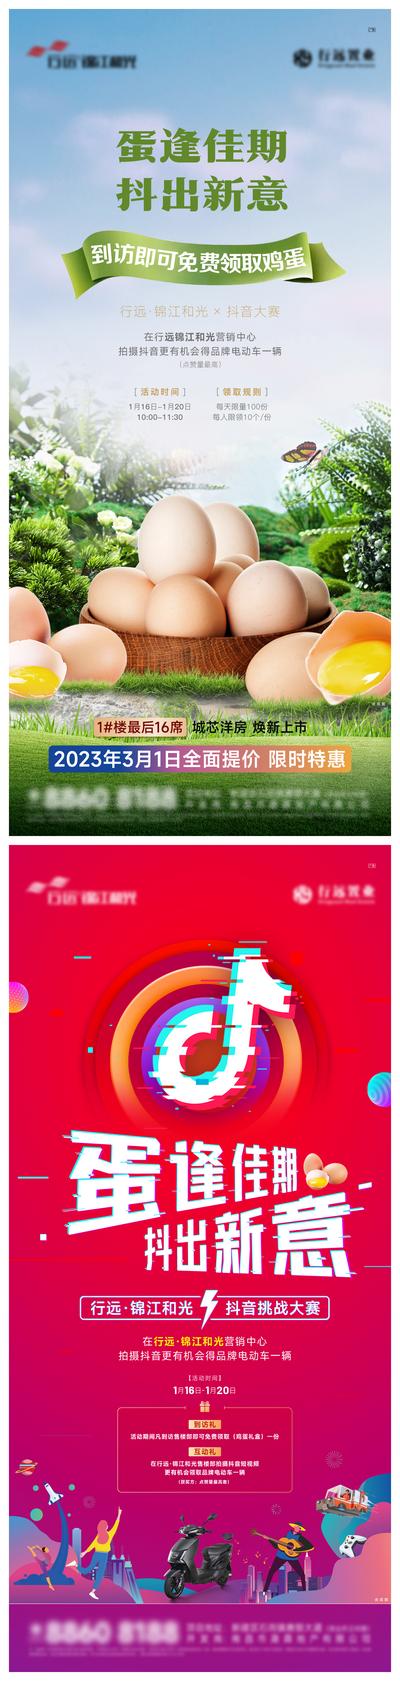 南门网 海报 抖音 直播 送鸡蛋 活动 预告